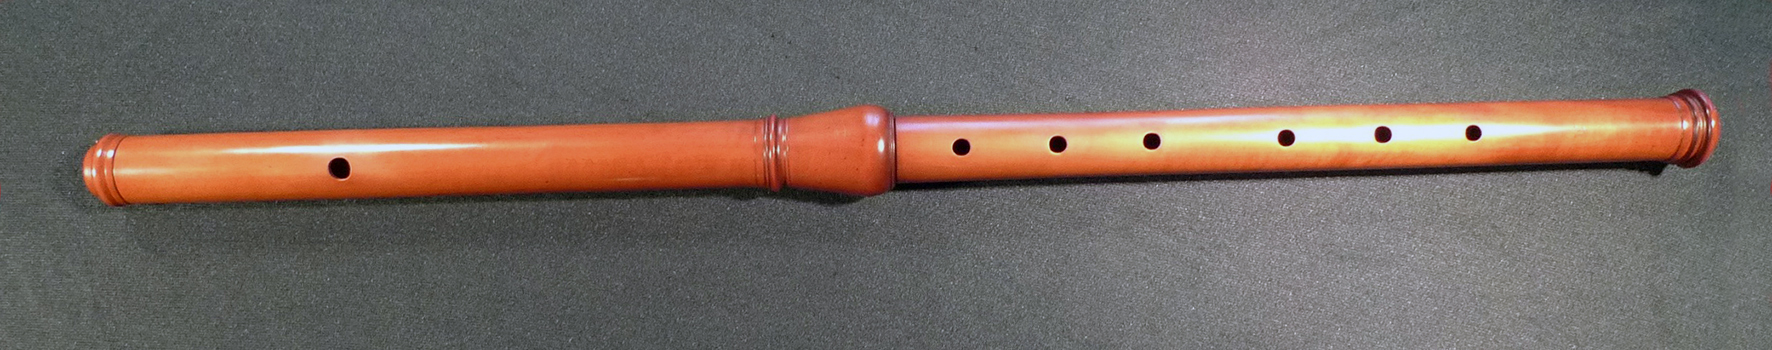 Baroque flute, Lissieu model